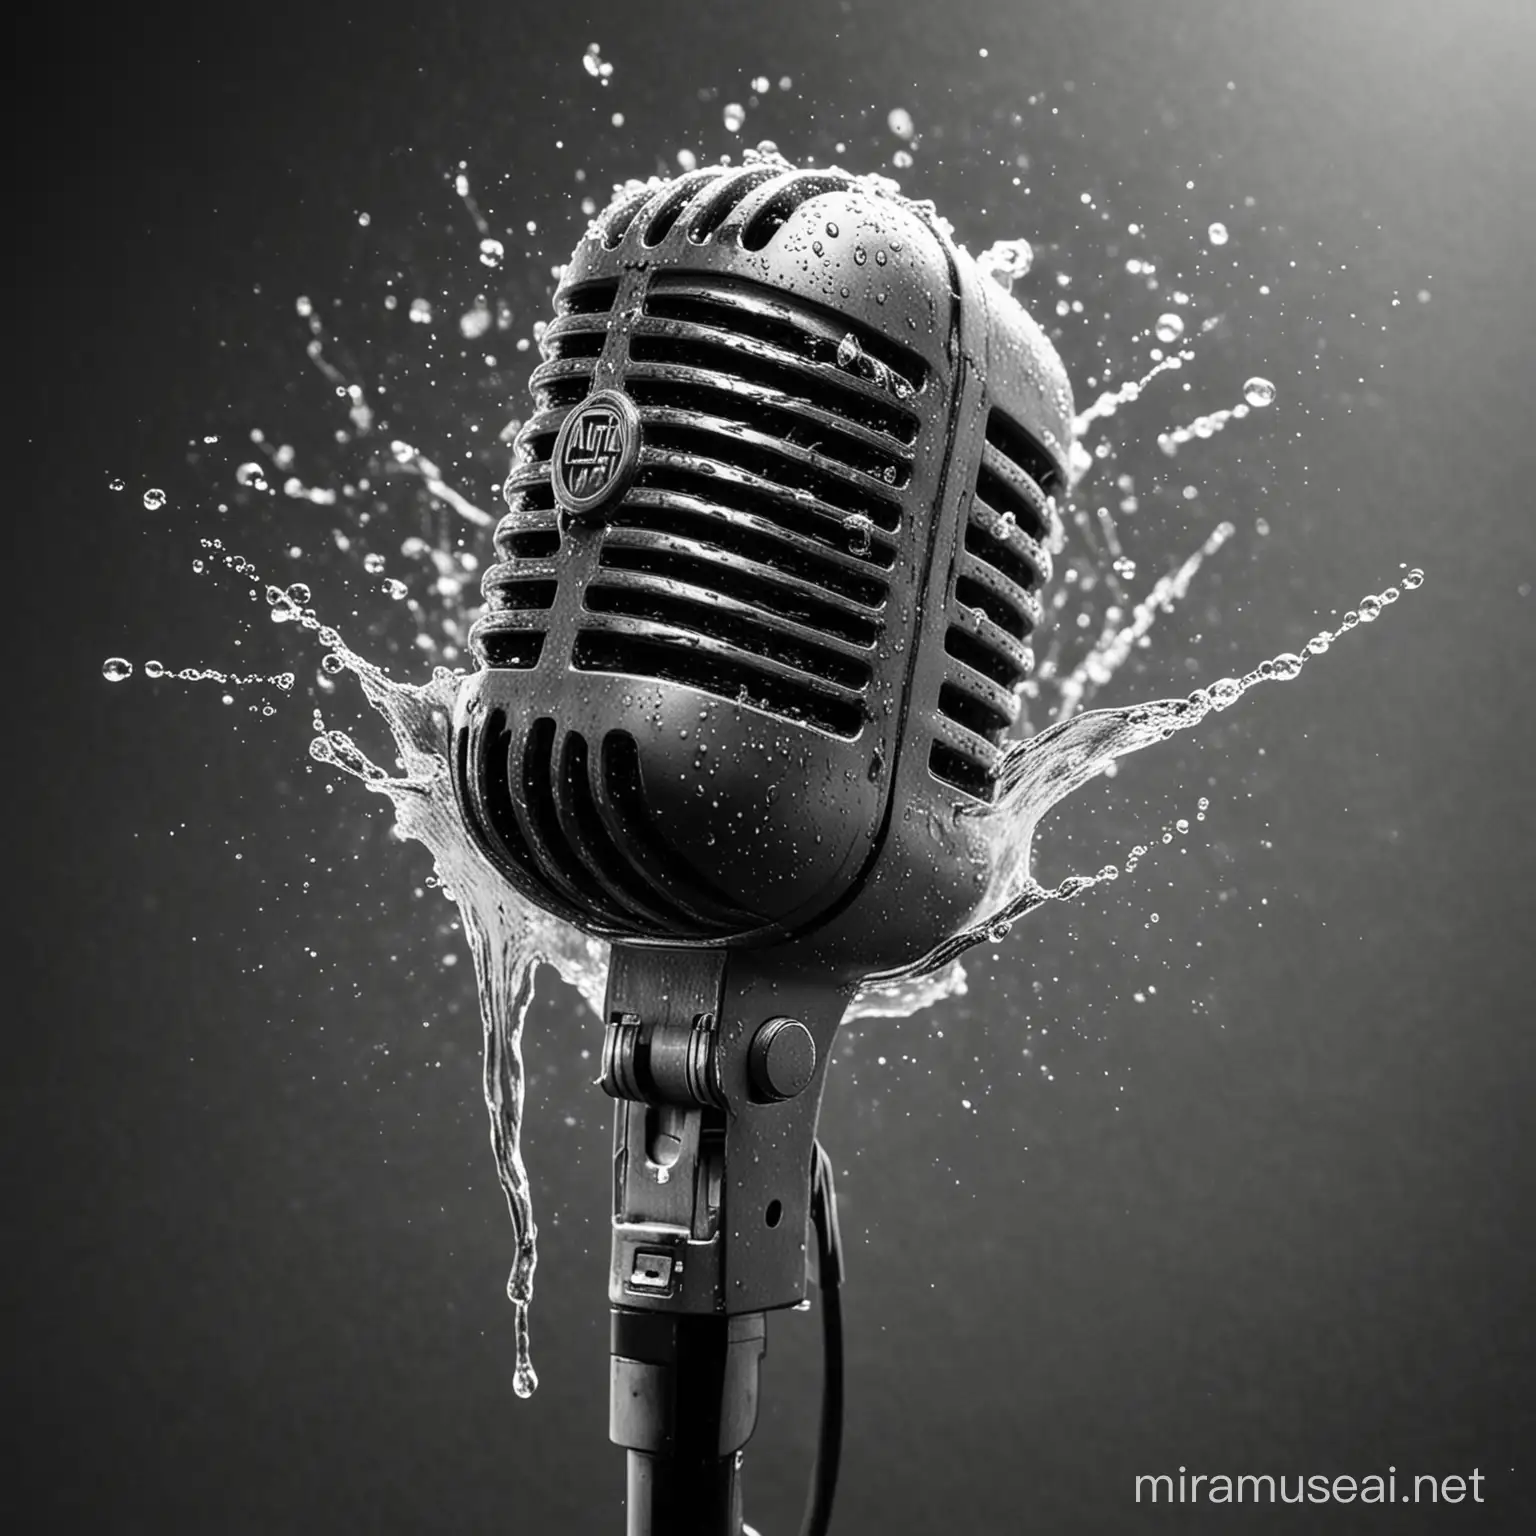 Vintage Microphone with Water Splash